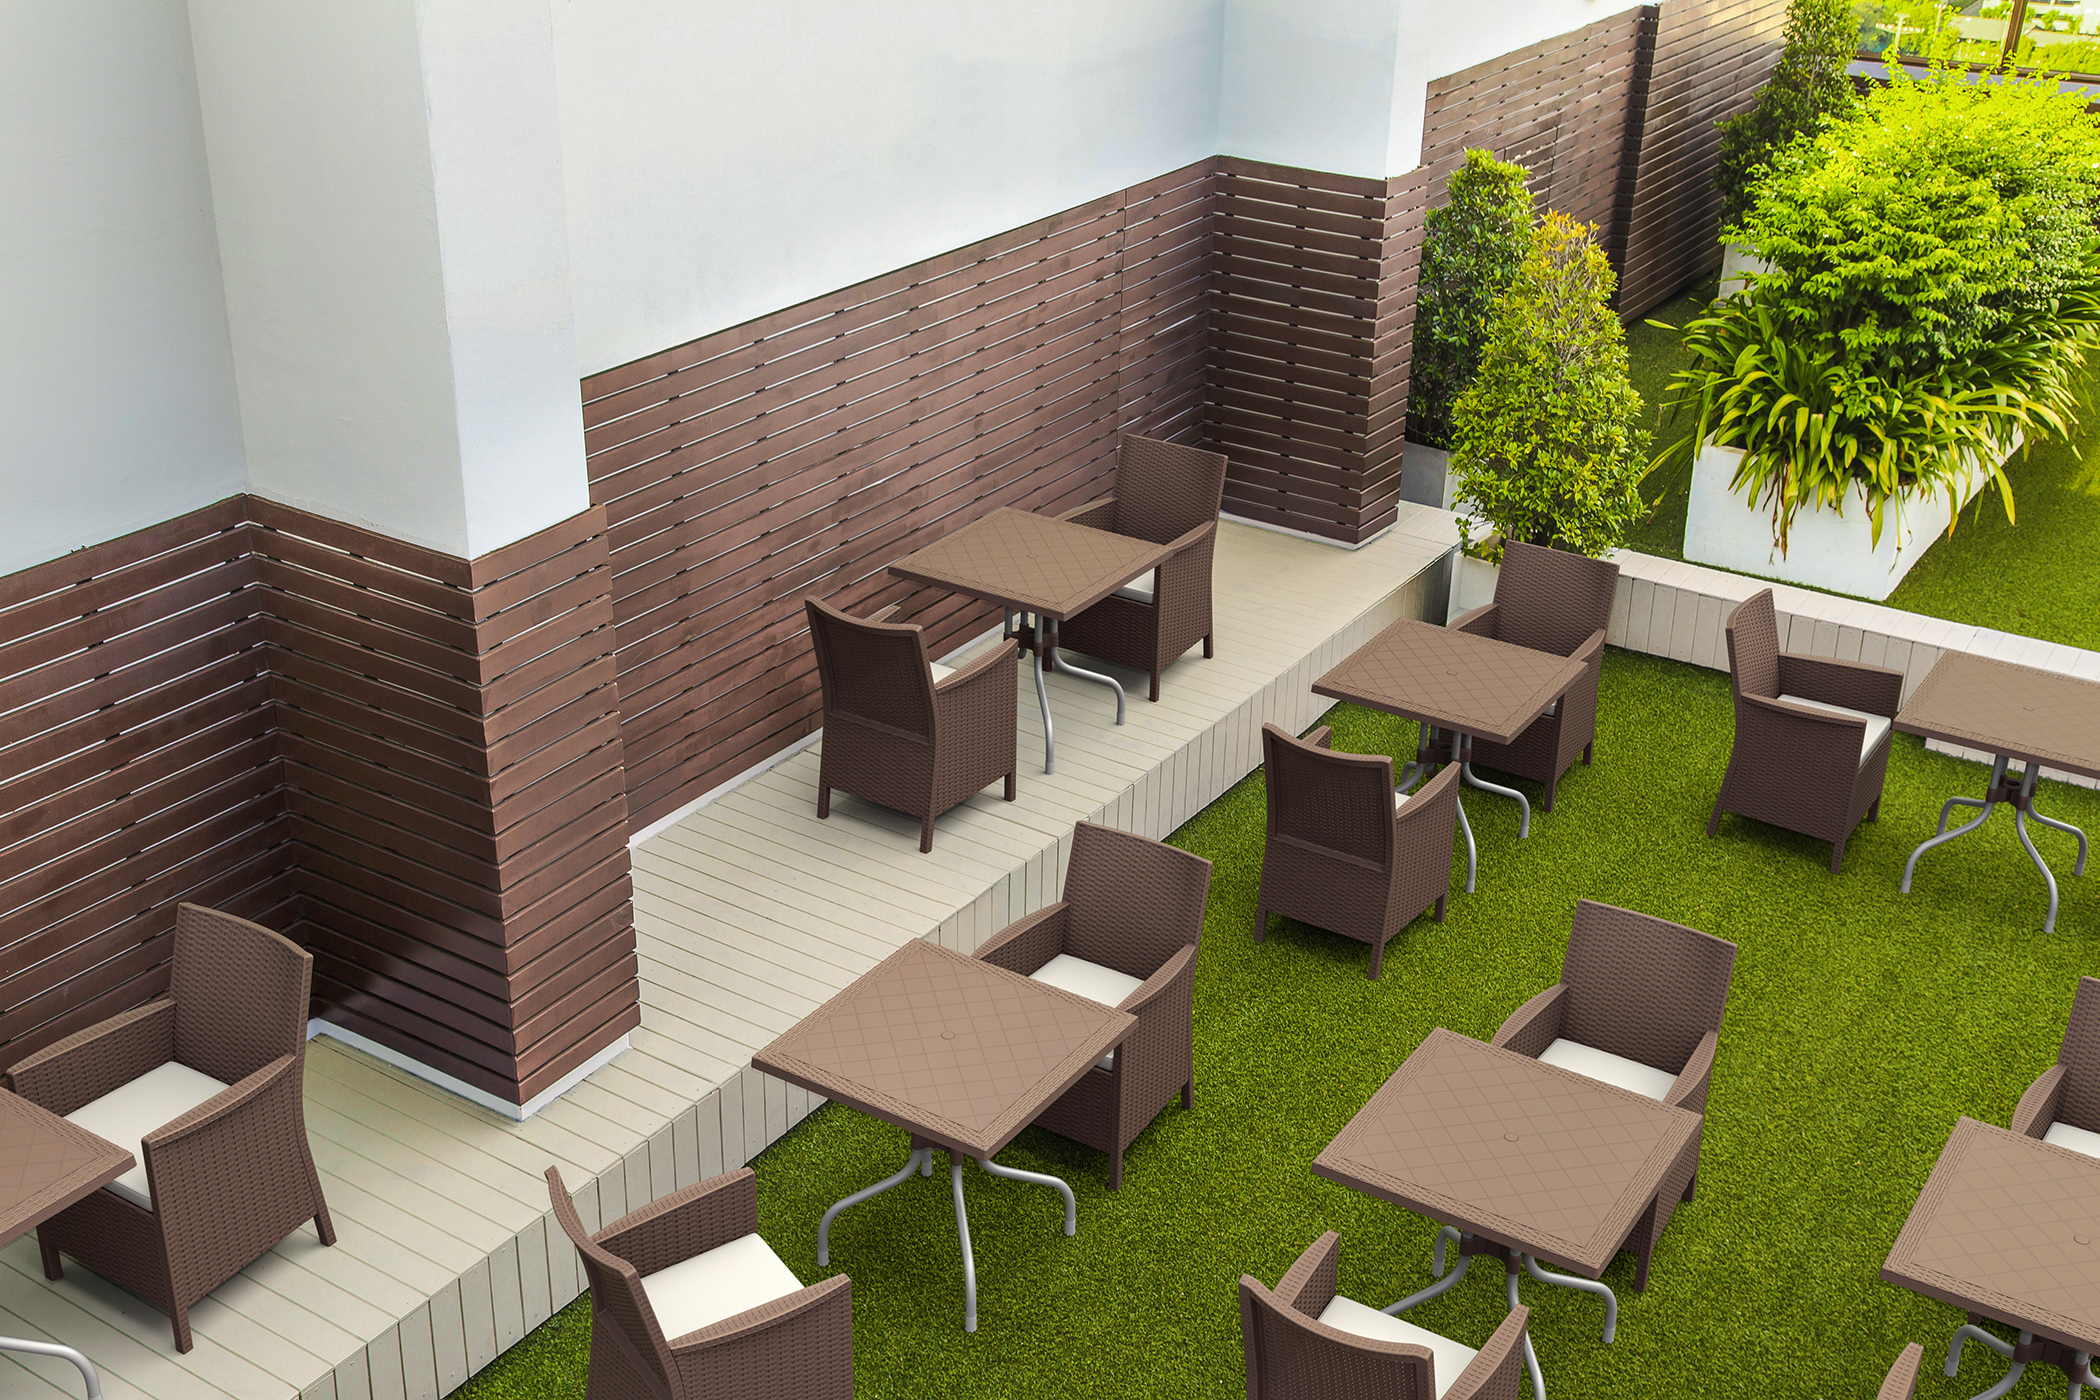 zestaw mebli ogrodowych, stoliki ogrodowe i fotele tworzą idealną przestrzeń dla kawiarnianego ogródka